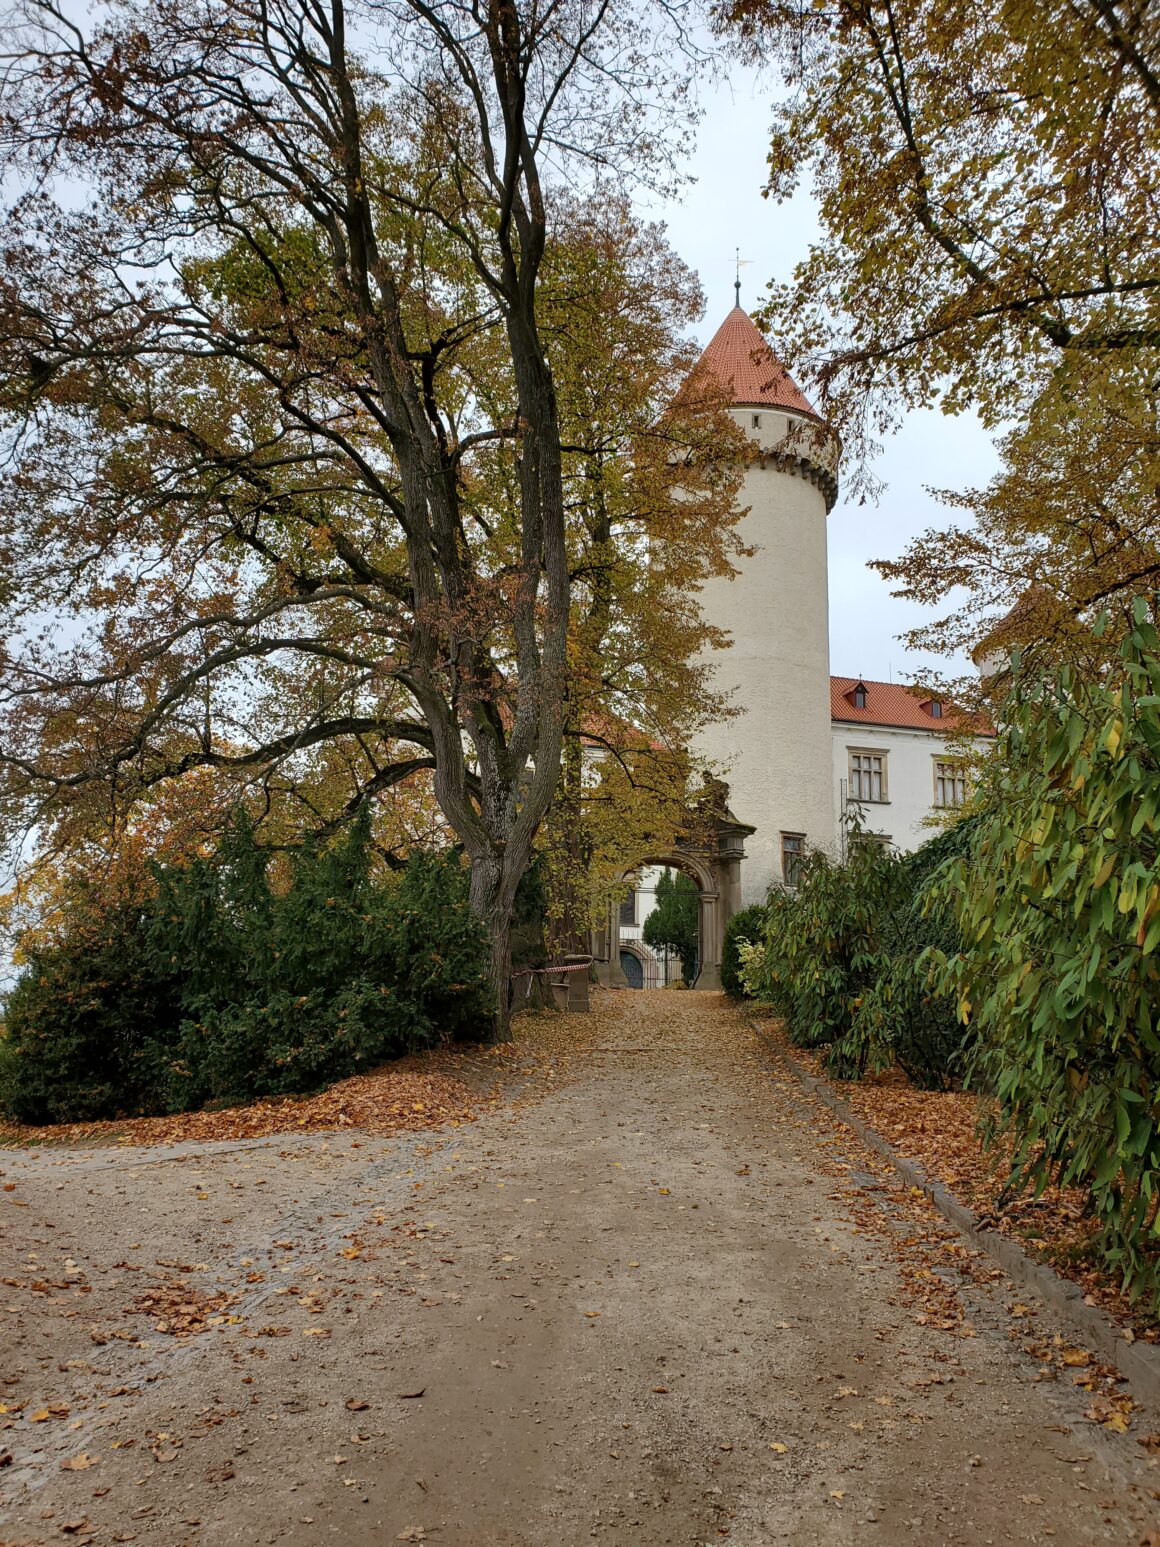 Konopiste Castle, located in Benesov, Czech Republic